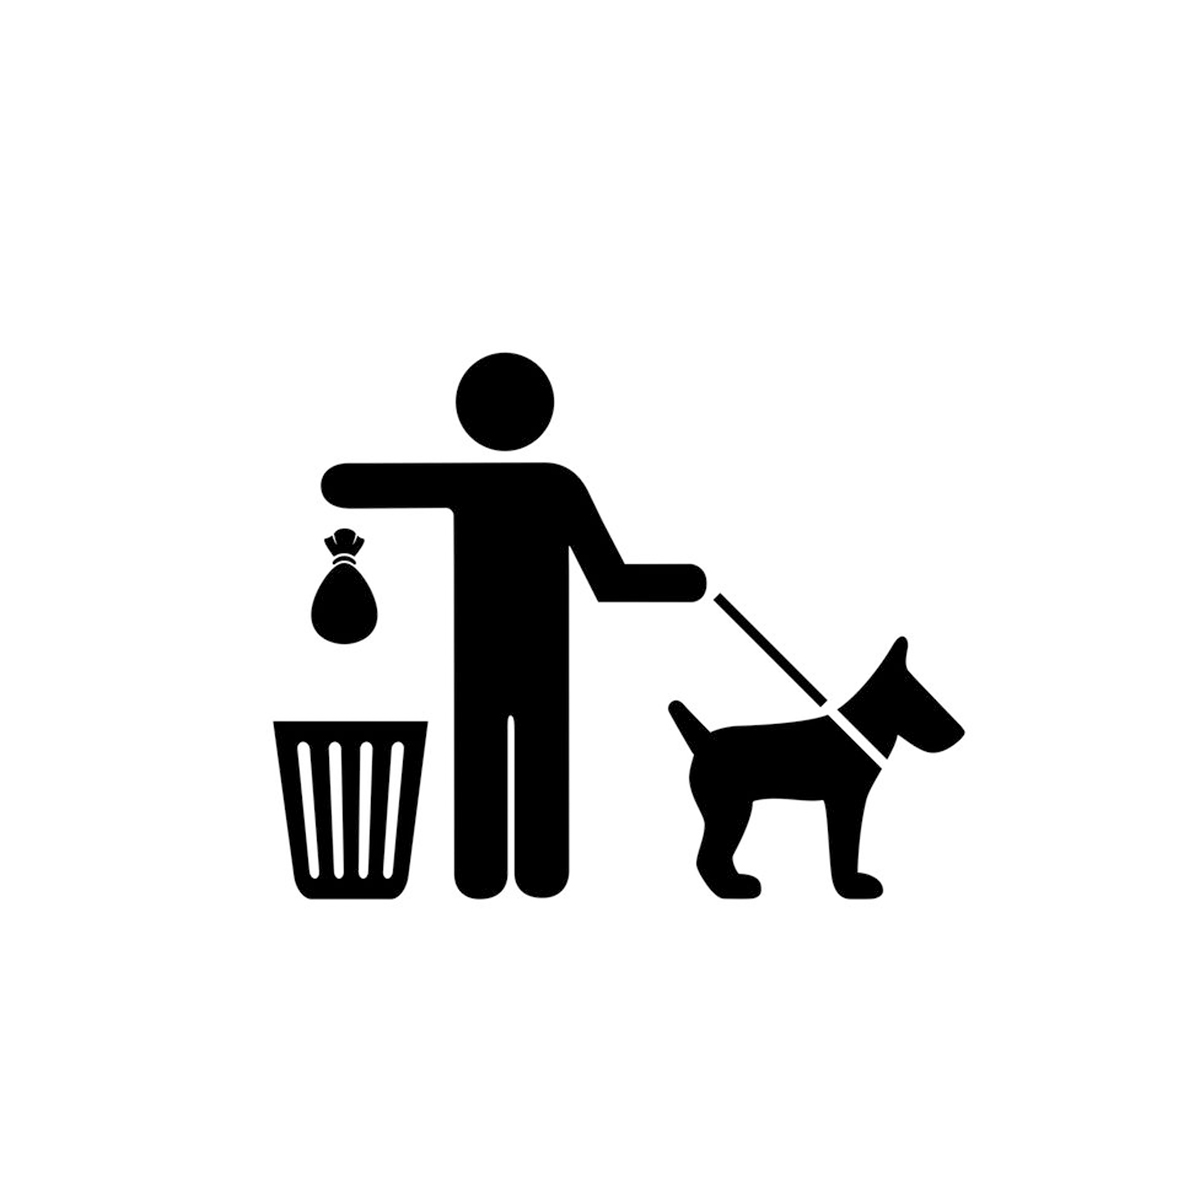 Con nuestras bolsas de excrementos caninos seremos ecológicos y cívicos